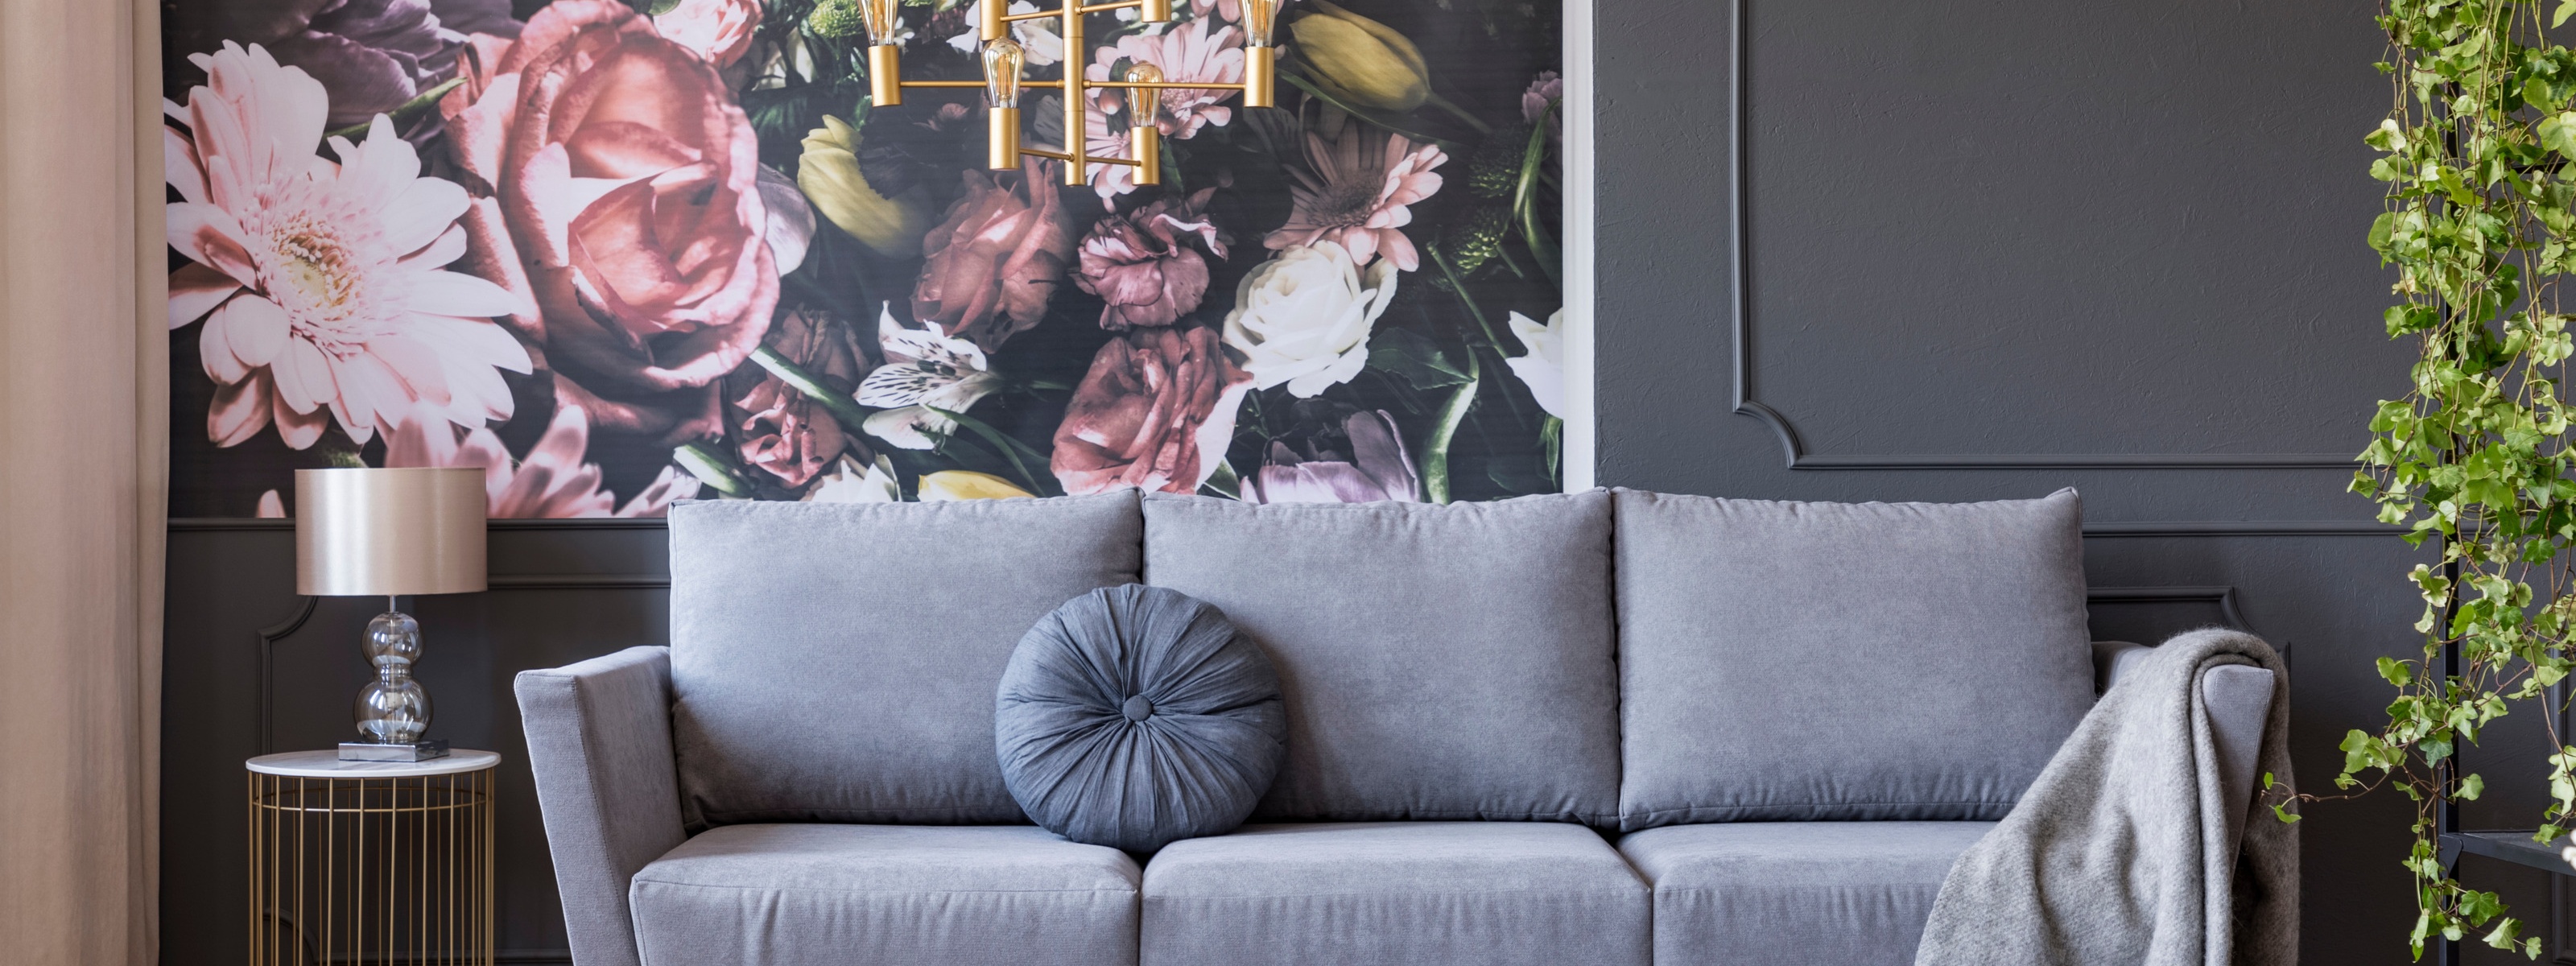 Graues Sofa vor großer Blumentapete, ringsum verschiedene Einrichtungsgegenstände